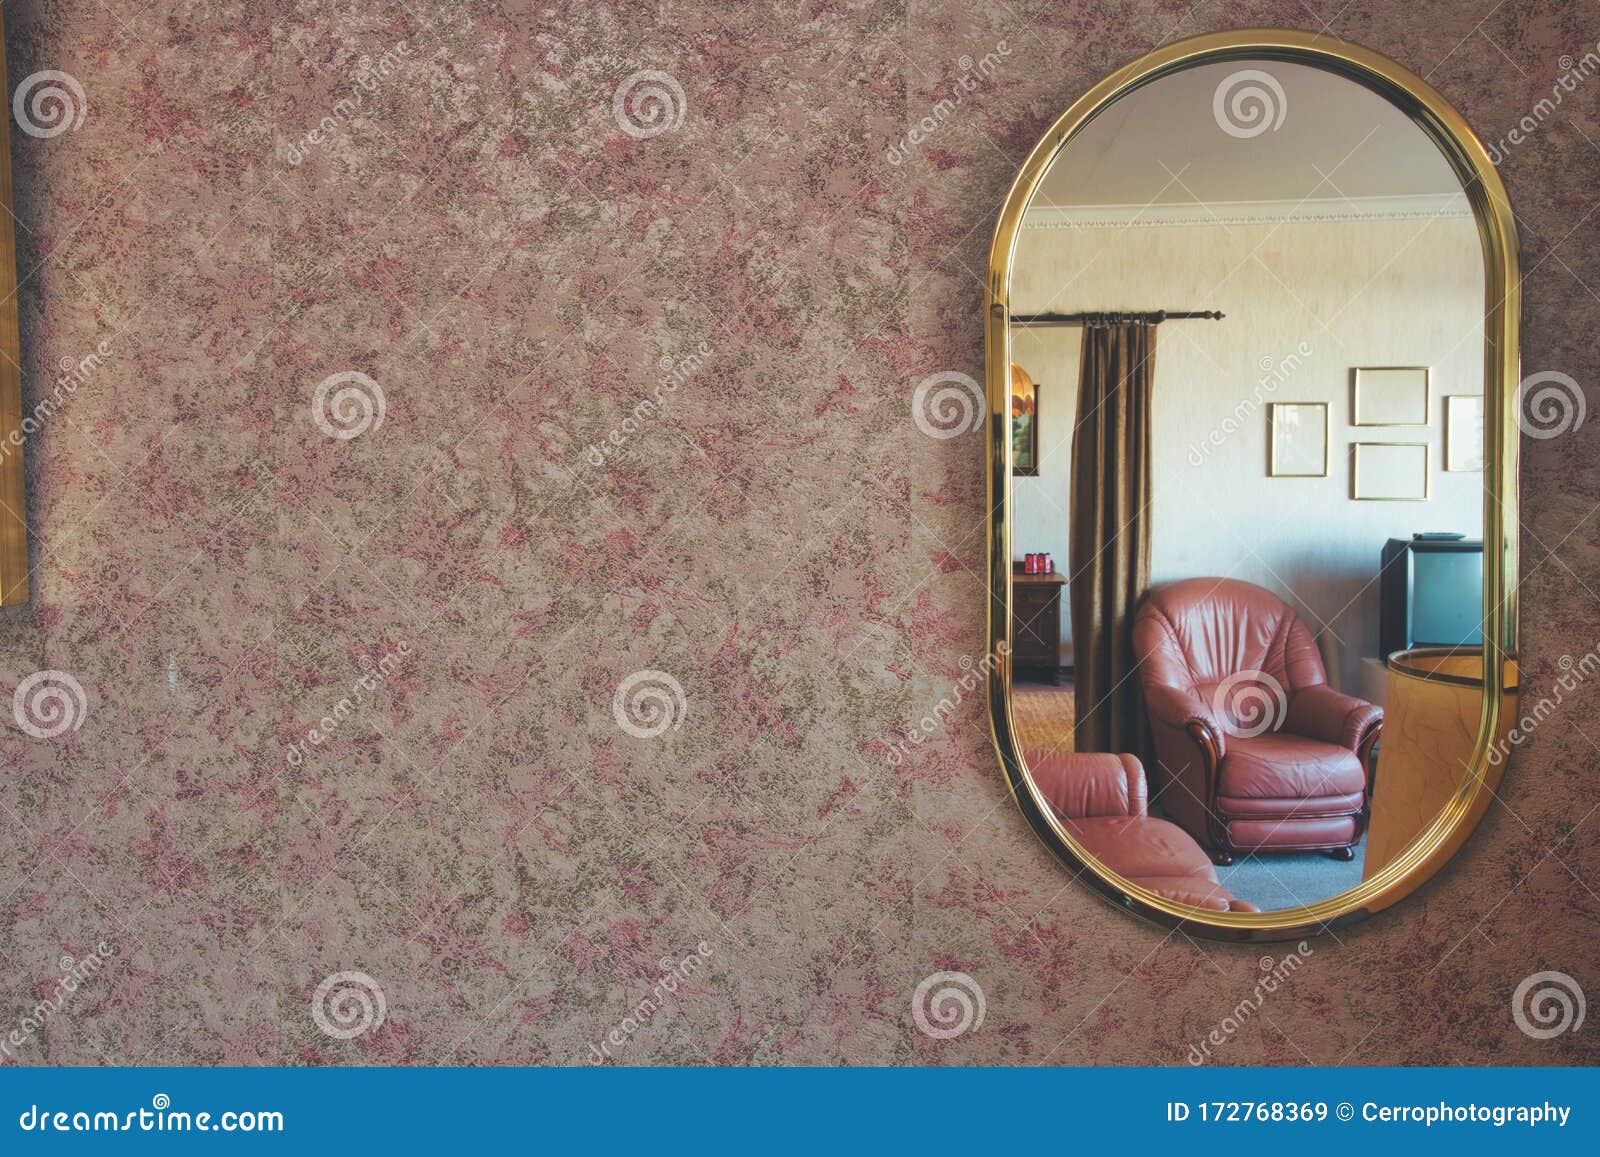 复古镜上贴着图案壁纸 在镜子空间里可以看到古董客厅 供文字阅读库存图片 图片包括有复古镜上贴着图案壁纸 在镜子空间里可以看到古董客厅 供文字阅读